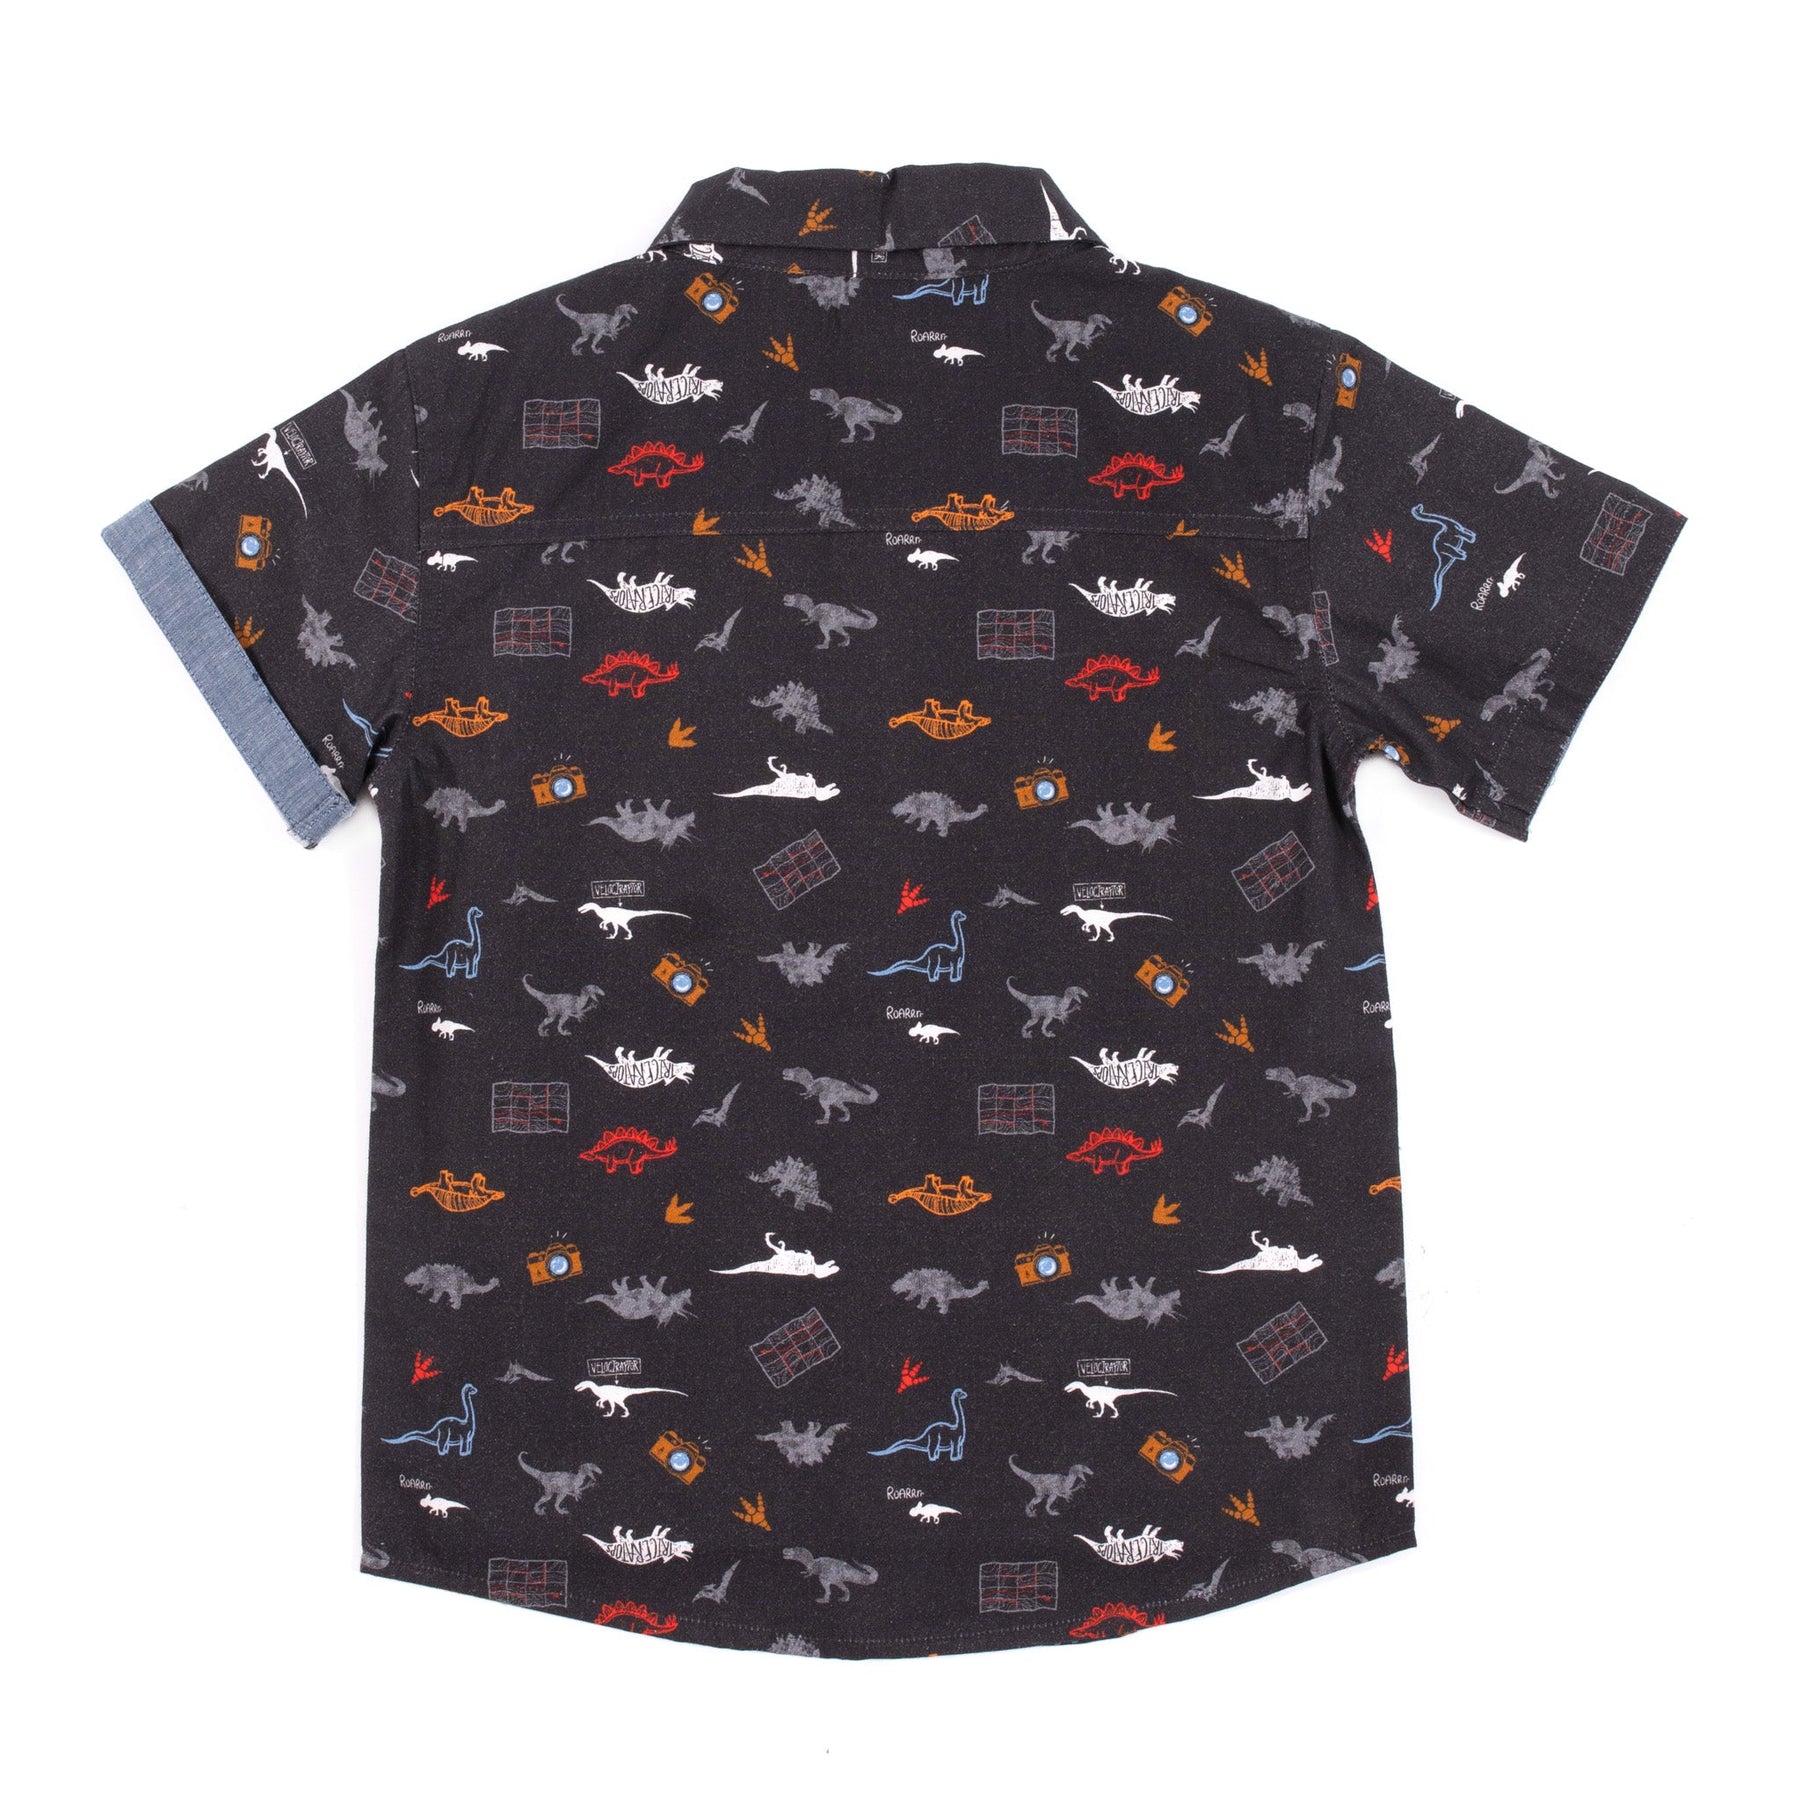 Chemise manches courtes pour enfant garçon par Nano | S2305-10 Charcoal | Boutique Flos, vêtements mode pour bébés et enfants